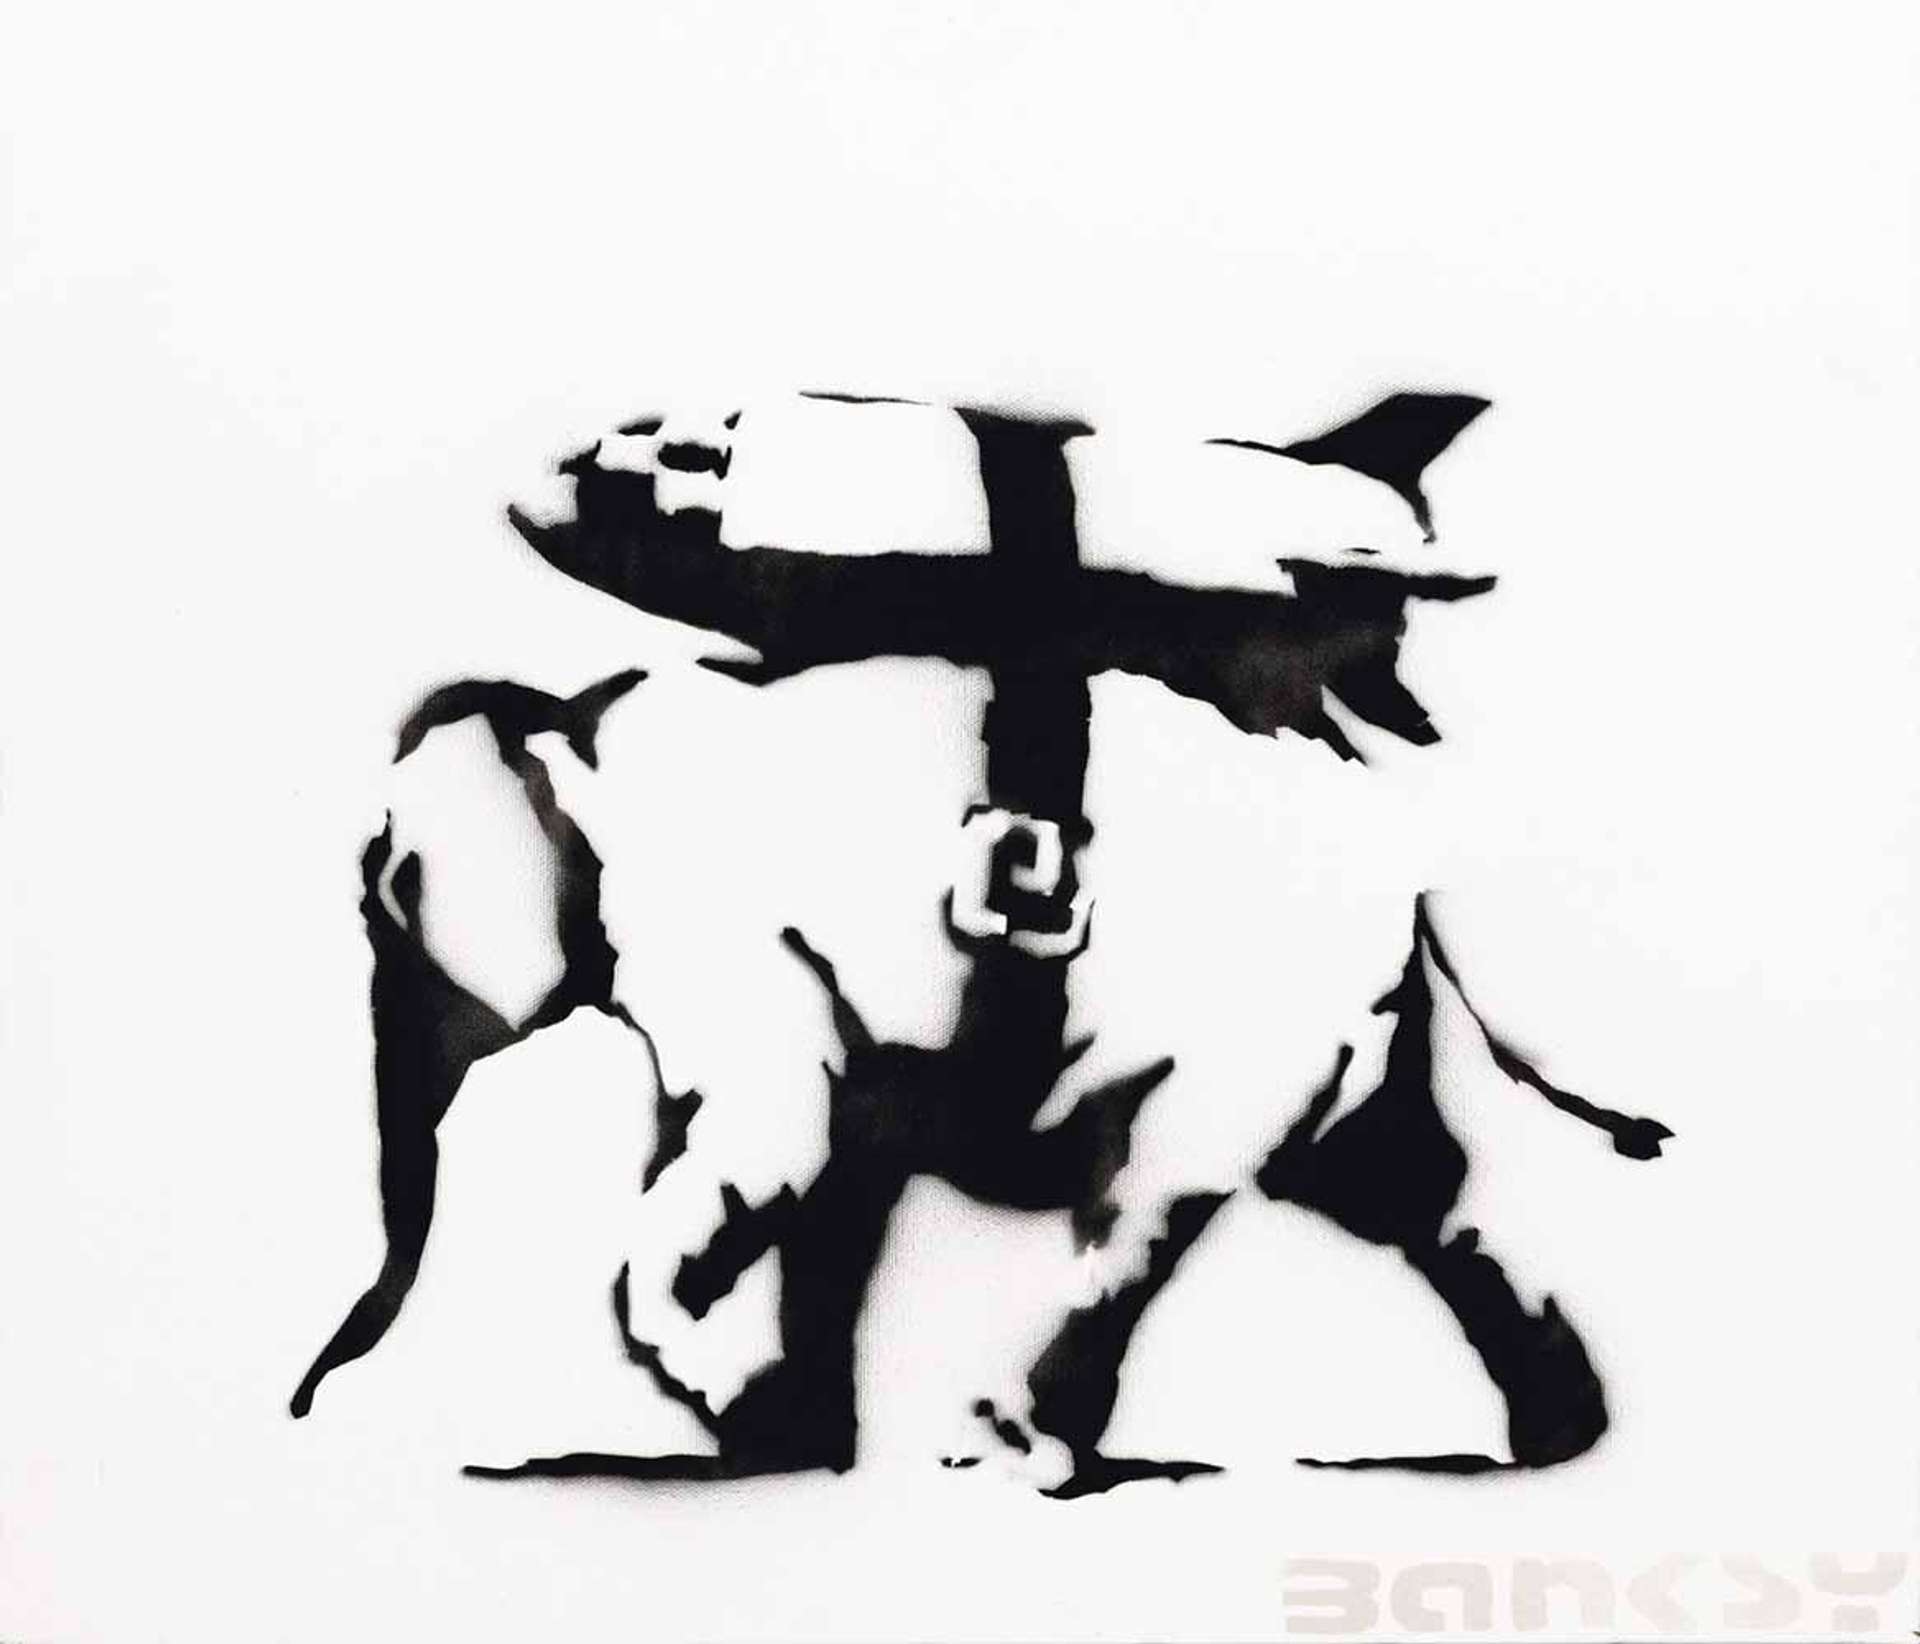 Heavy Weaponry by Banksy - MyArtBroker